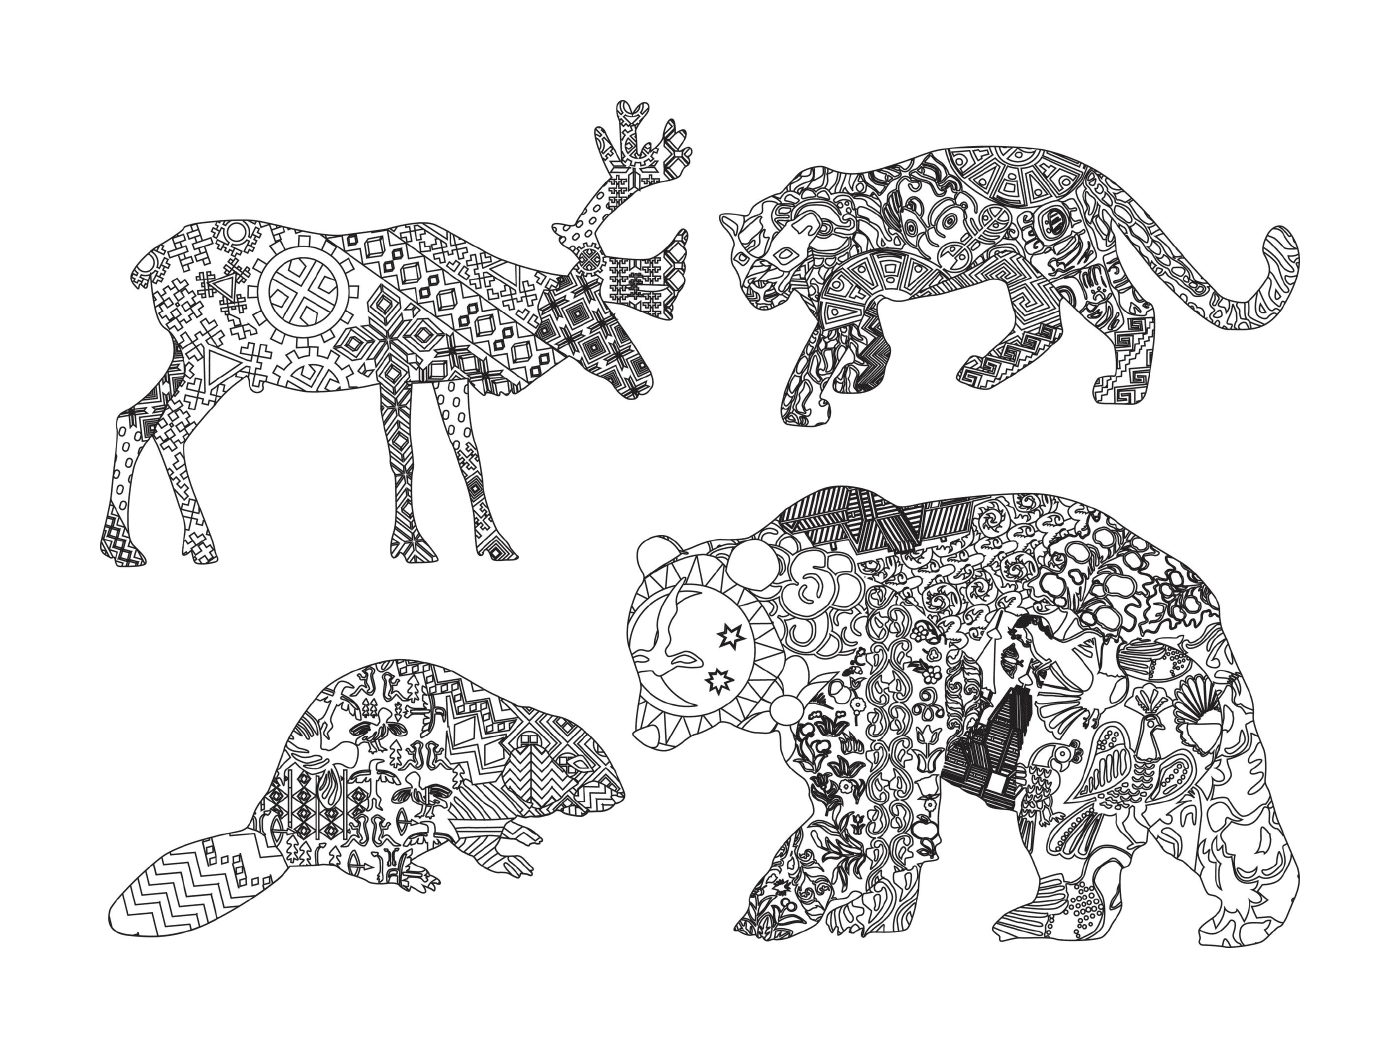   Groupe d'animaux dessinés avec des motifs 